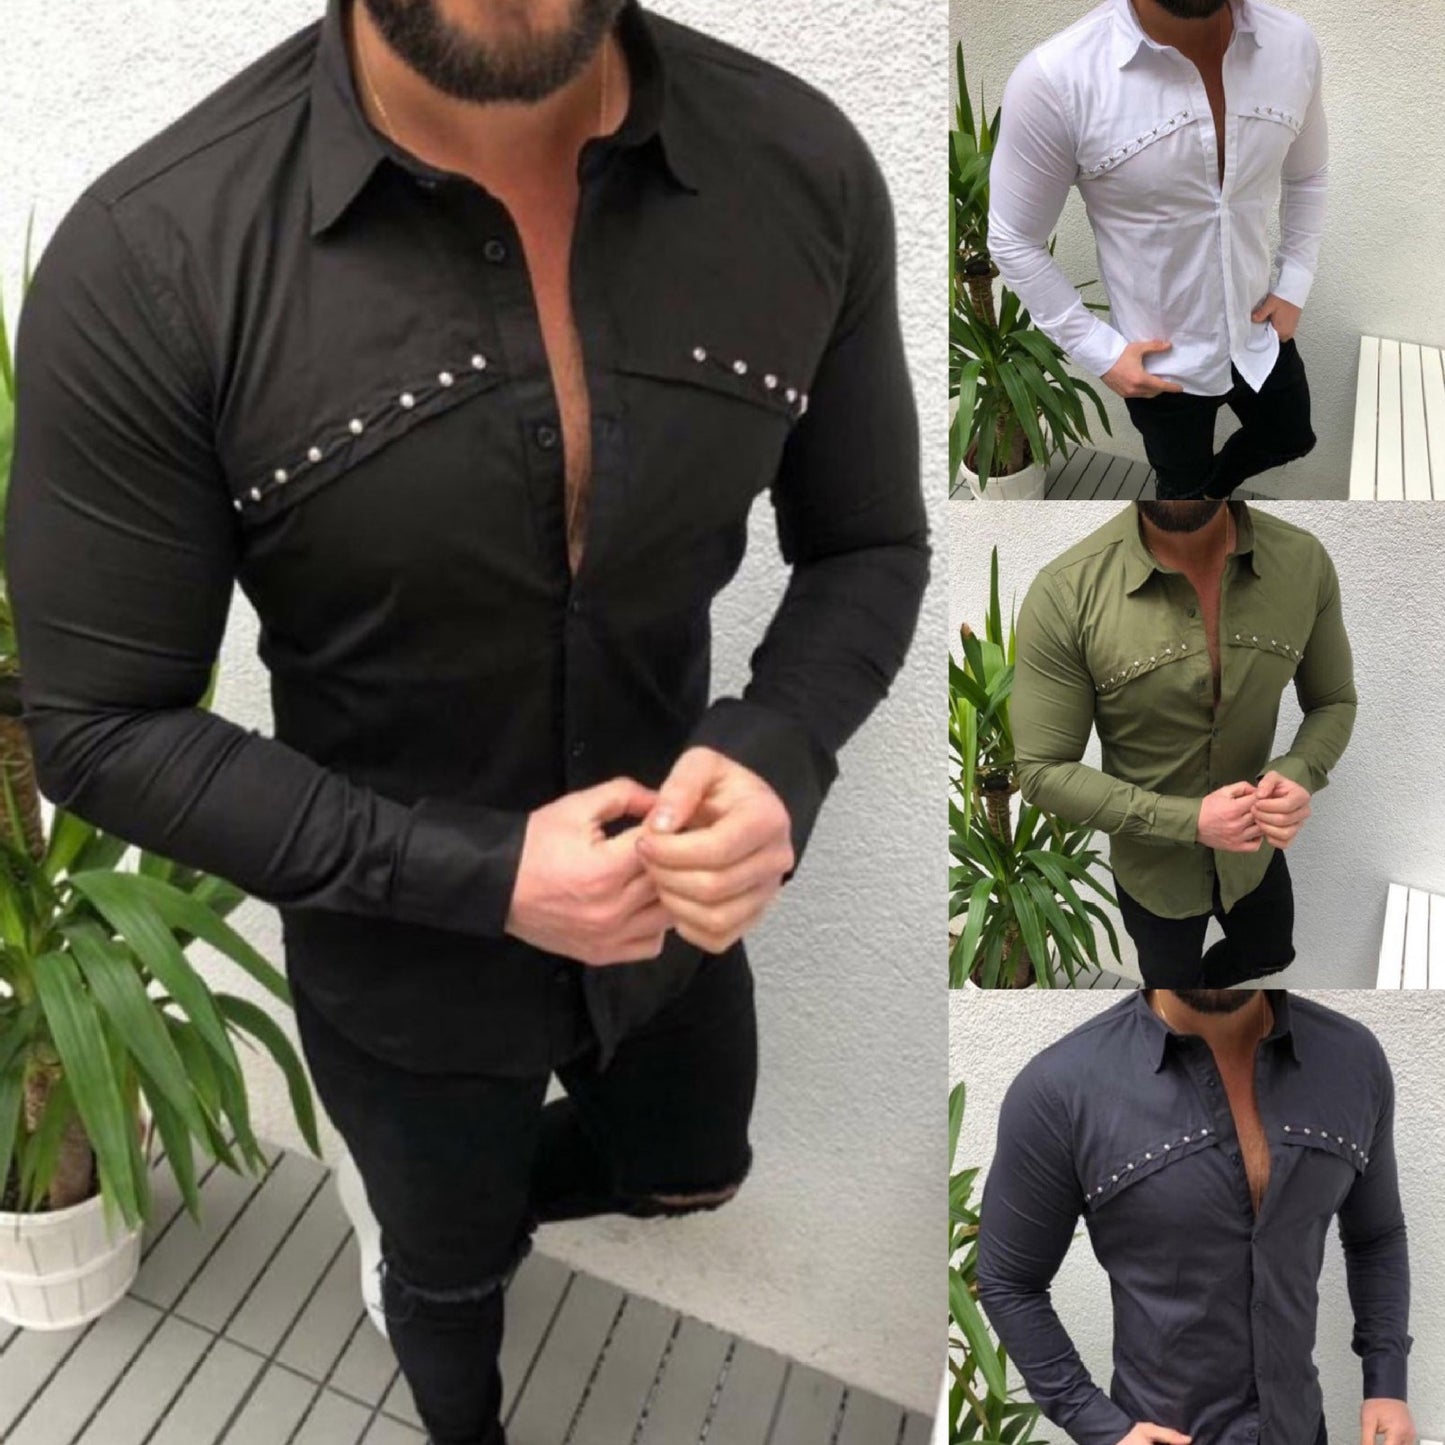 Men's Casual Cardigan Lapel Solid Color Shirt